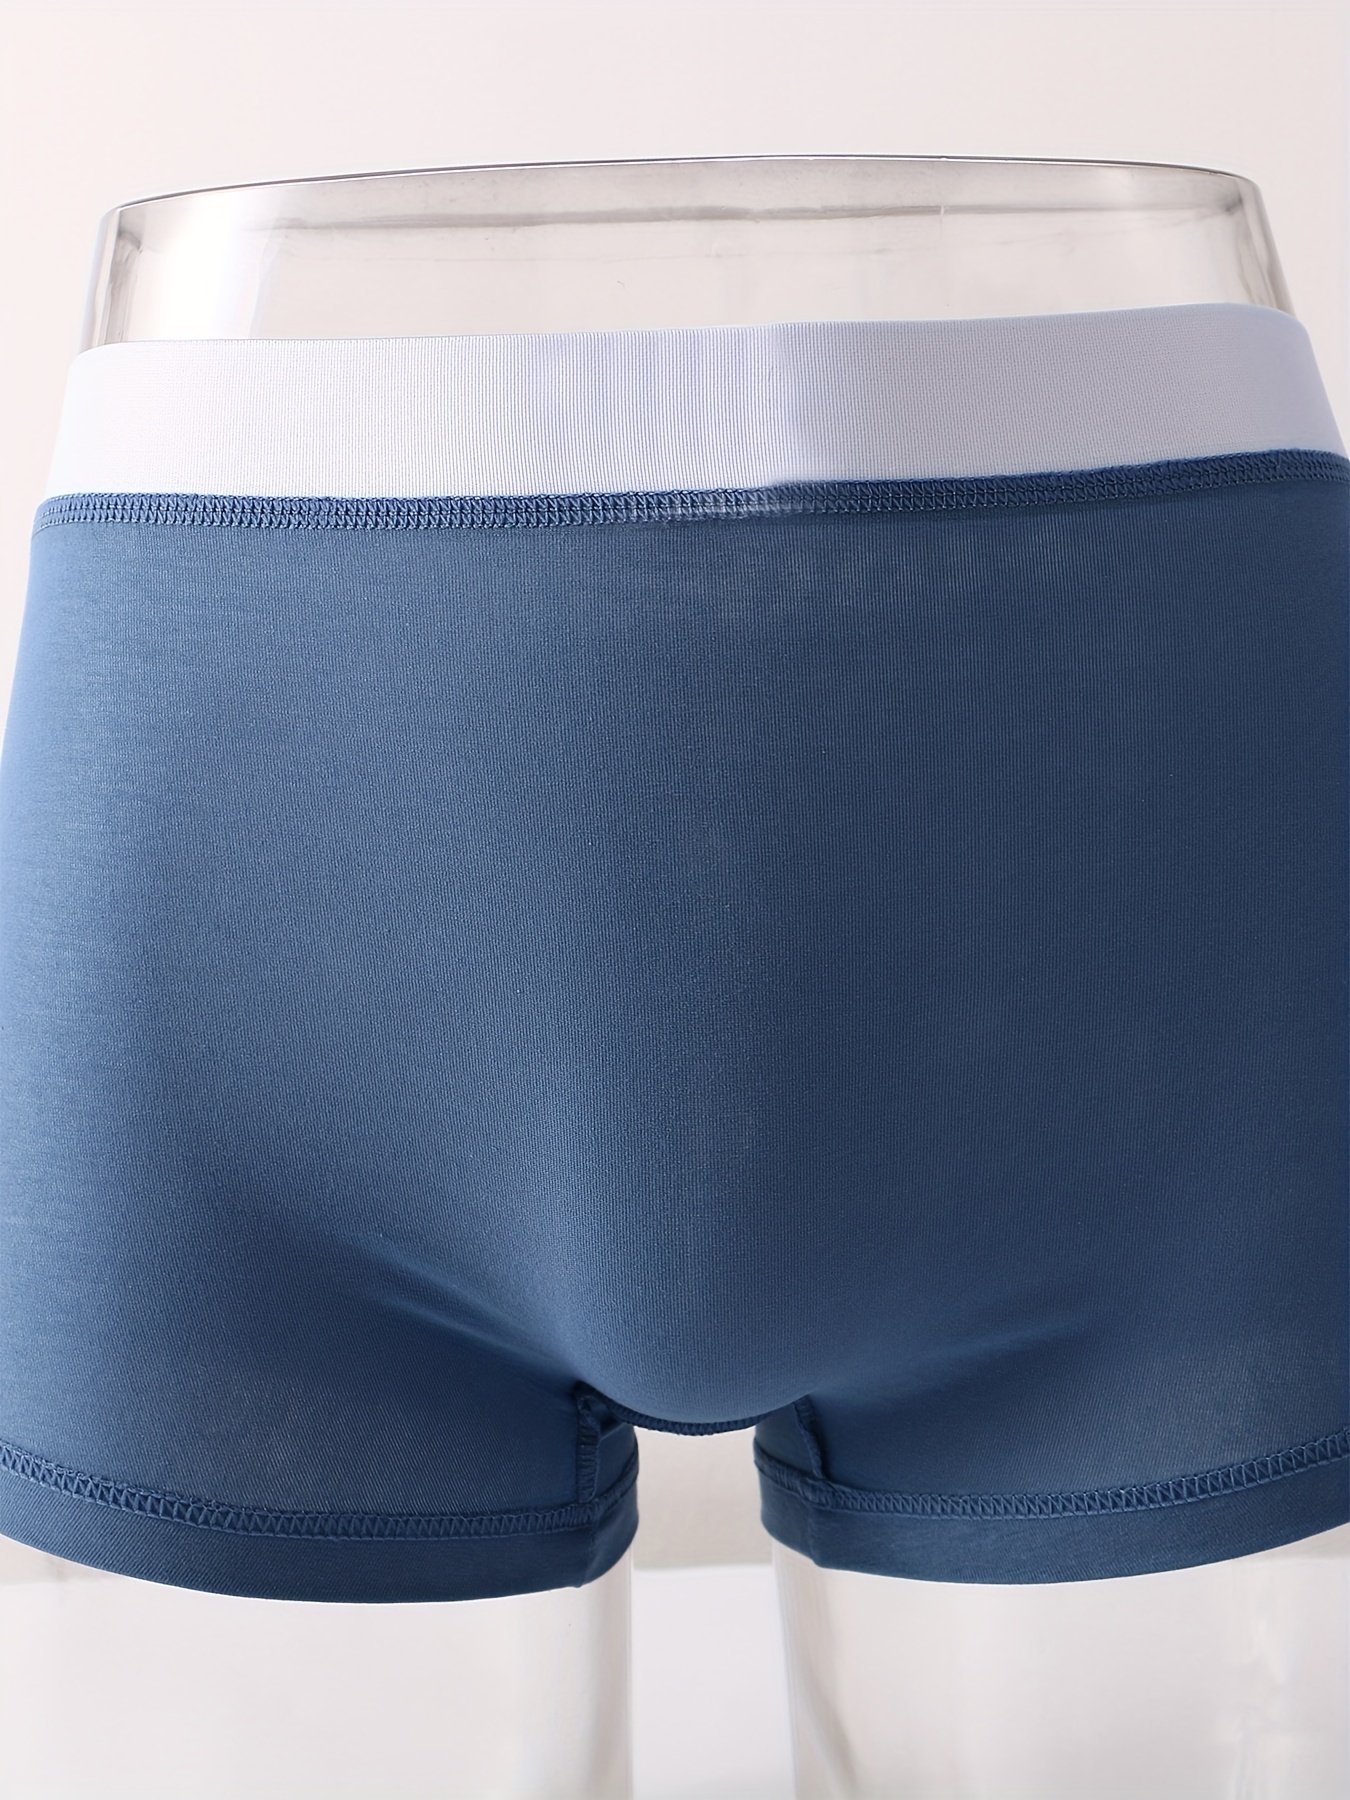 US Men Underwear Penis Pouch Elephant Trunk Underwear Breathable